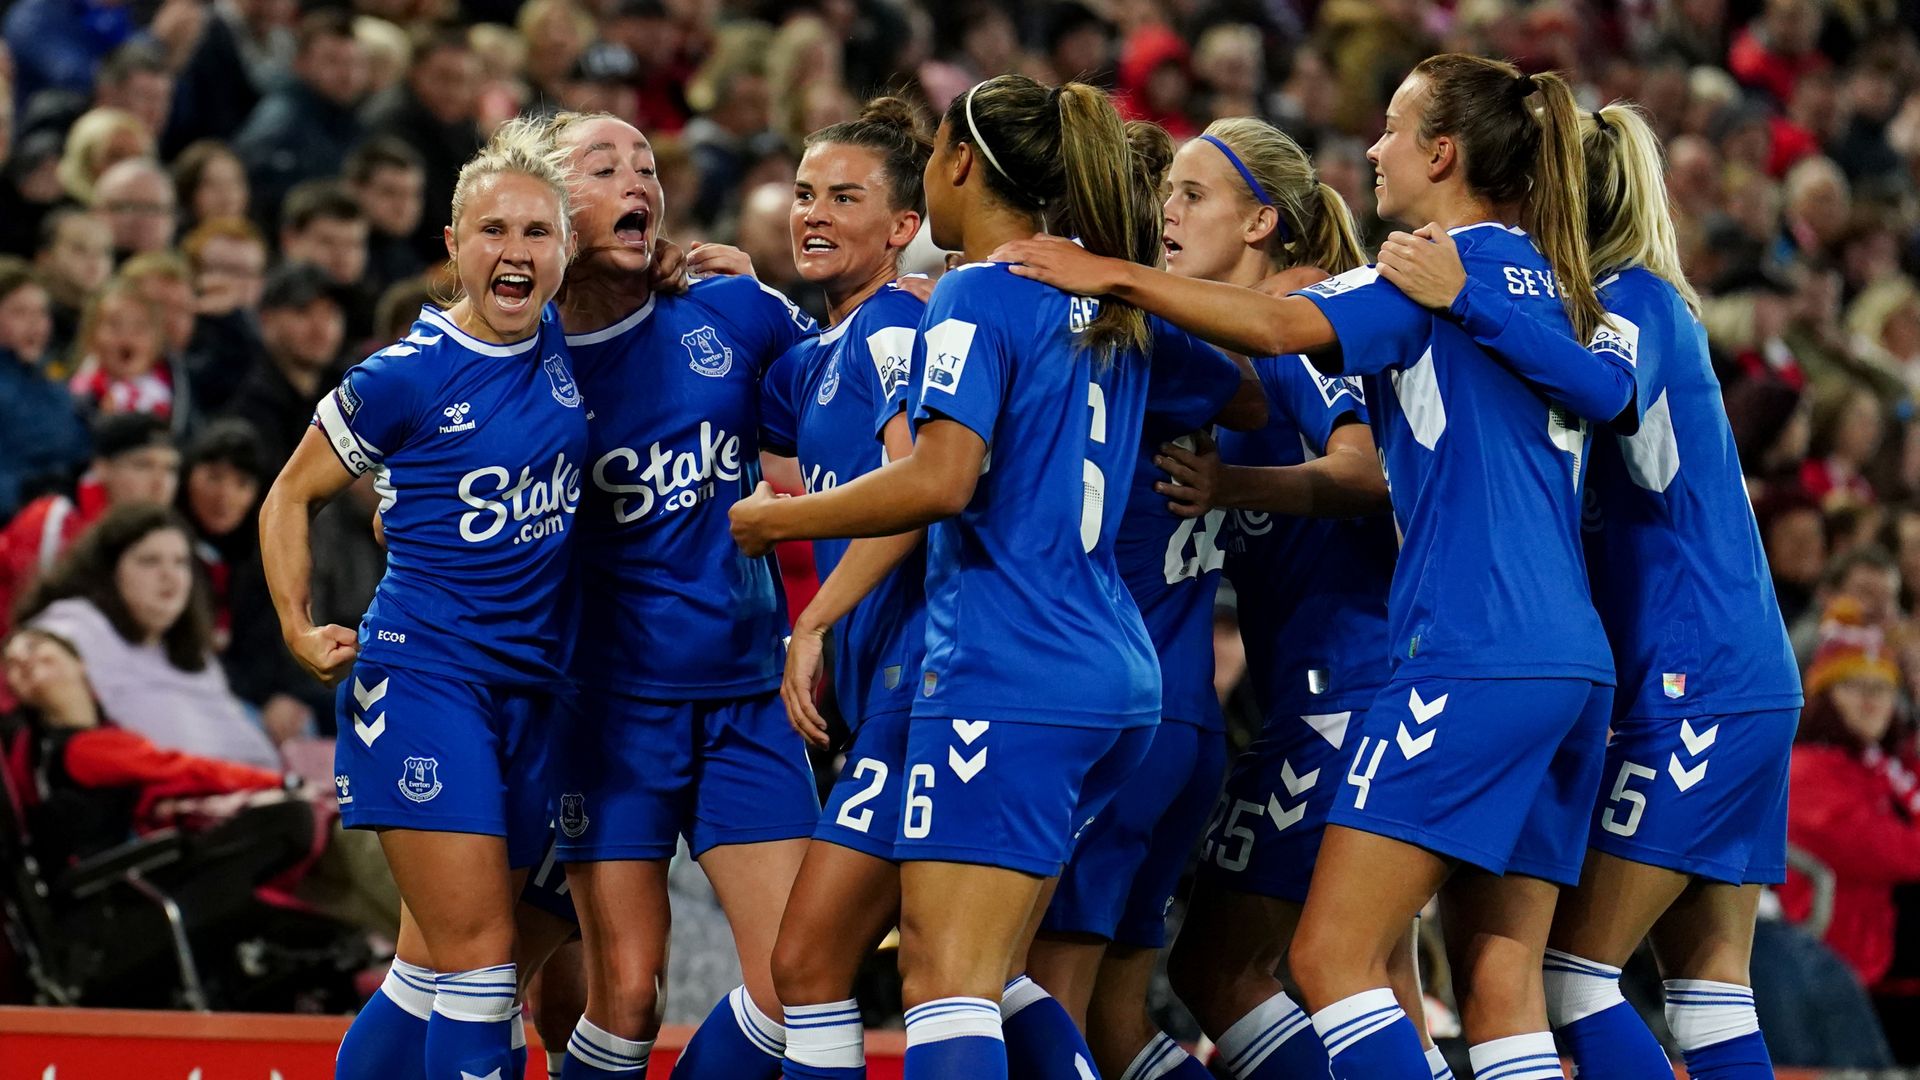 Liverpool Women 0-3 Everton Women: Megan Finnigan, Jess Park and Hanna Bennison score as Toffees stun Anfield